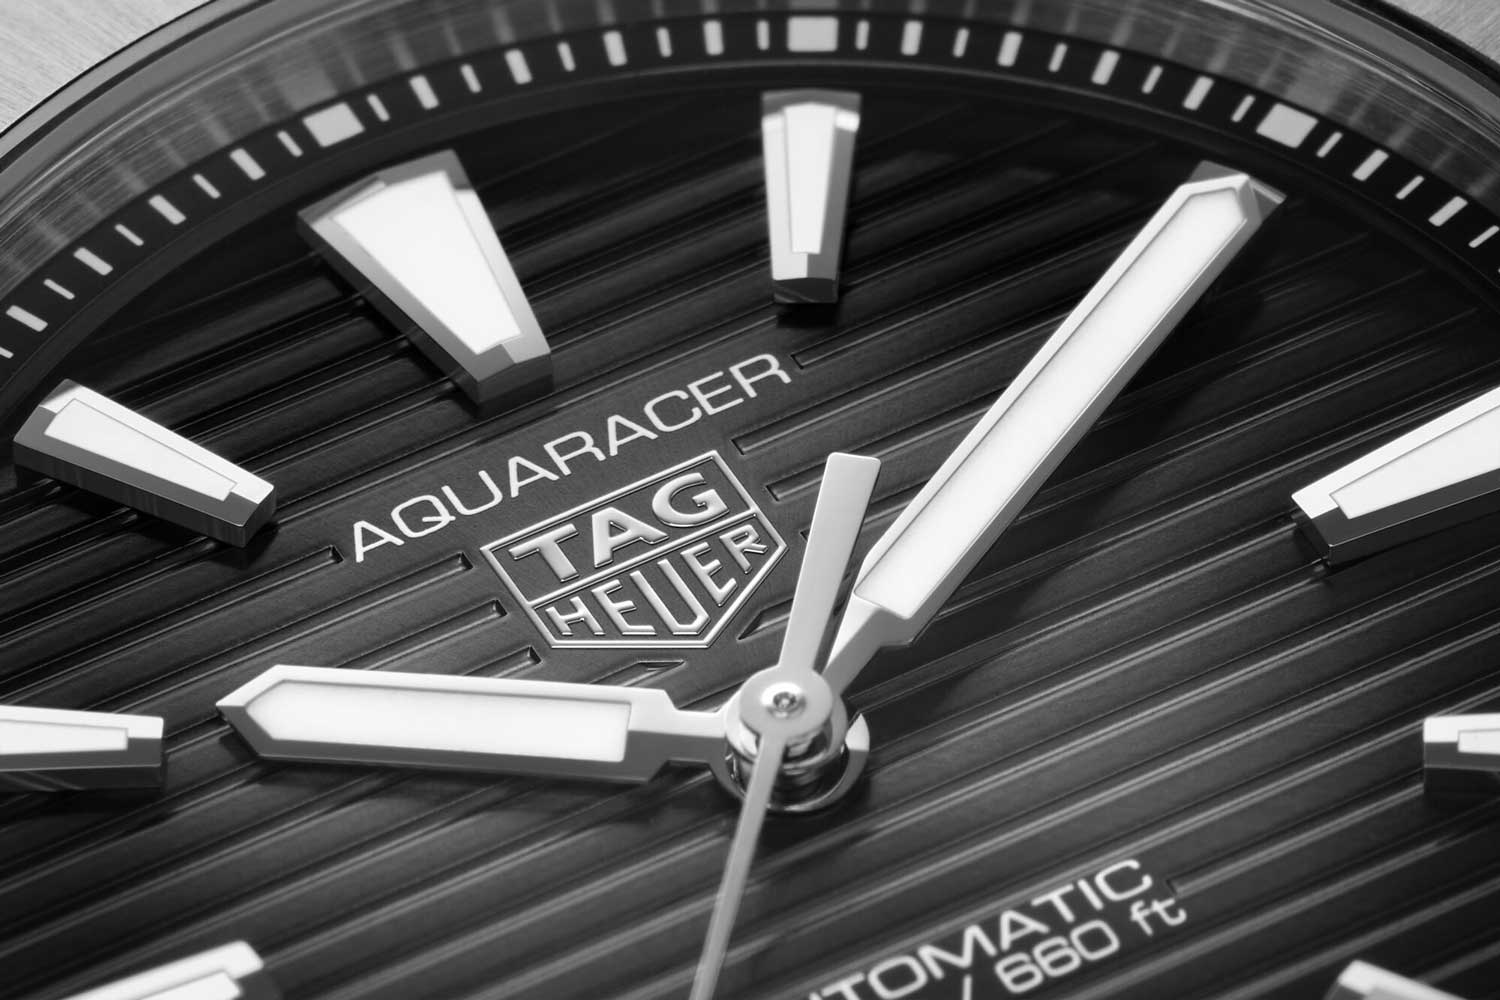 Bộ sưu tập Aquaracer Professional 200 mới nhất đến từ TAG Heuer (Phần 1)